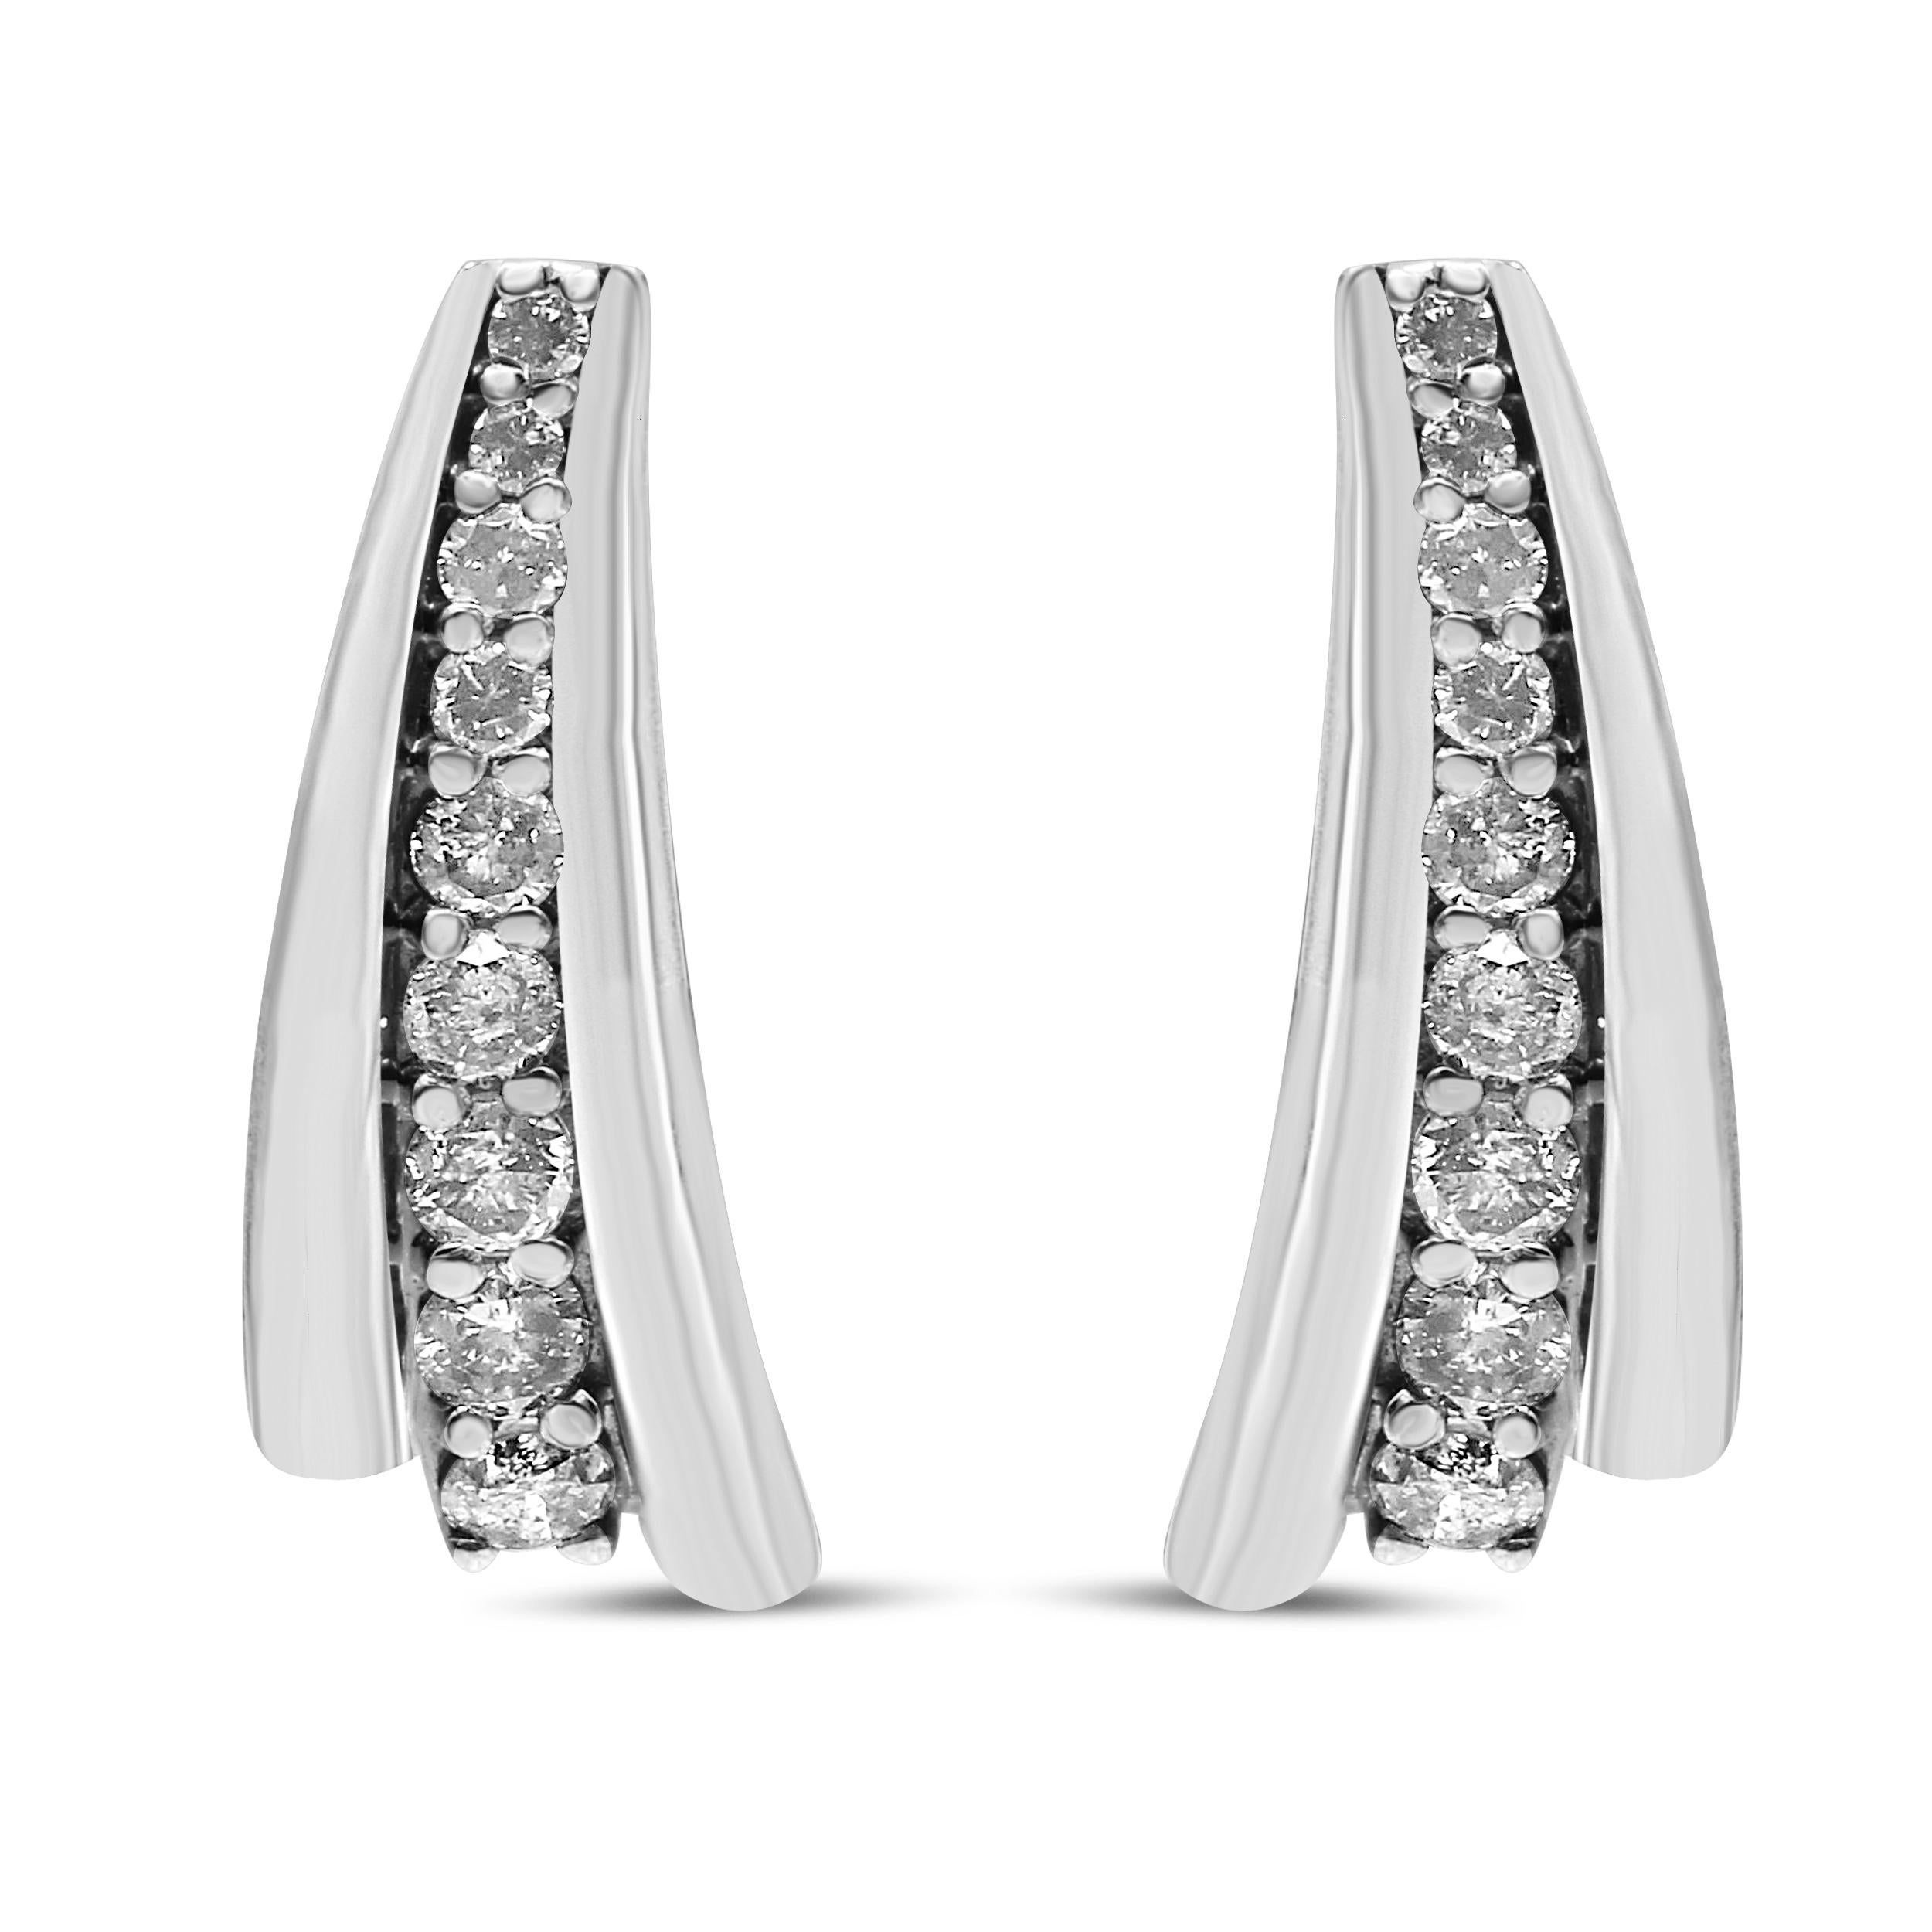 Glänzende runde Diamanten in Zackenfassung sind in ihrer Größe subtil abgestuft, vom kleinsten oben bis zum größten unten, um diese funkelnden Huggie-Ohrringe für sie zu kreieren. Die Diamanten, die auf beiden Seiten von poliertem 924er